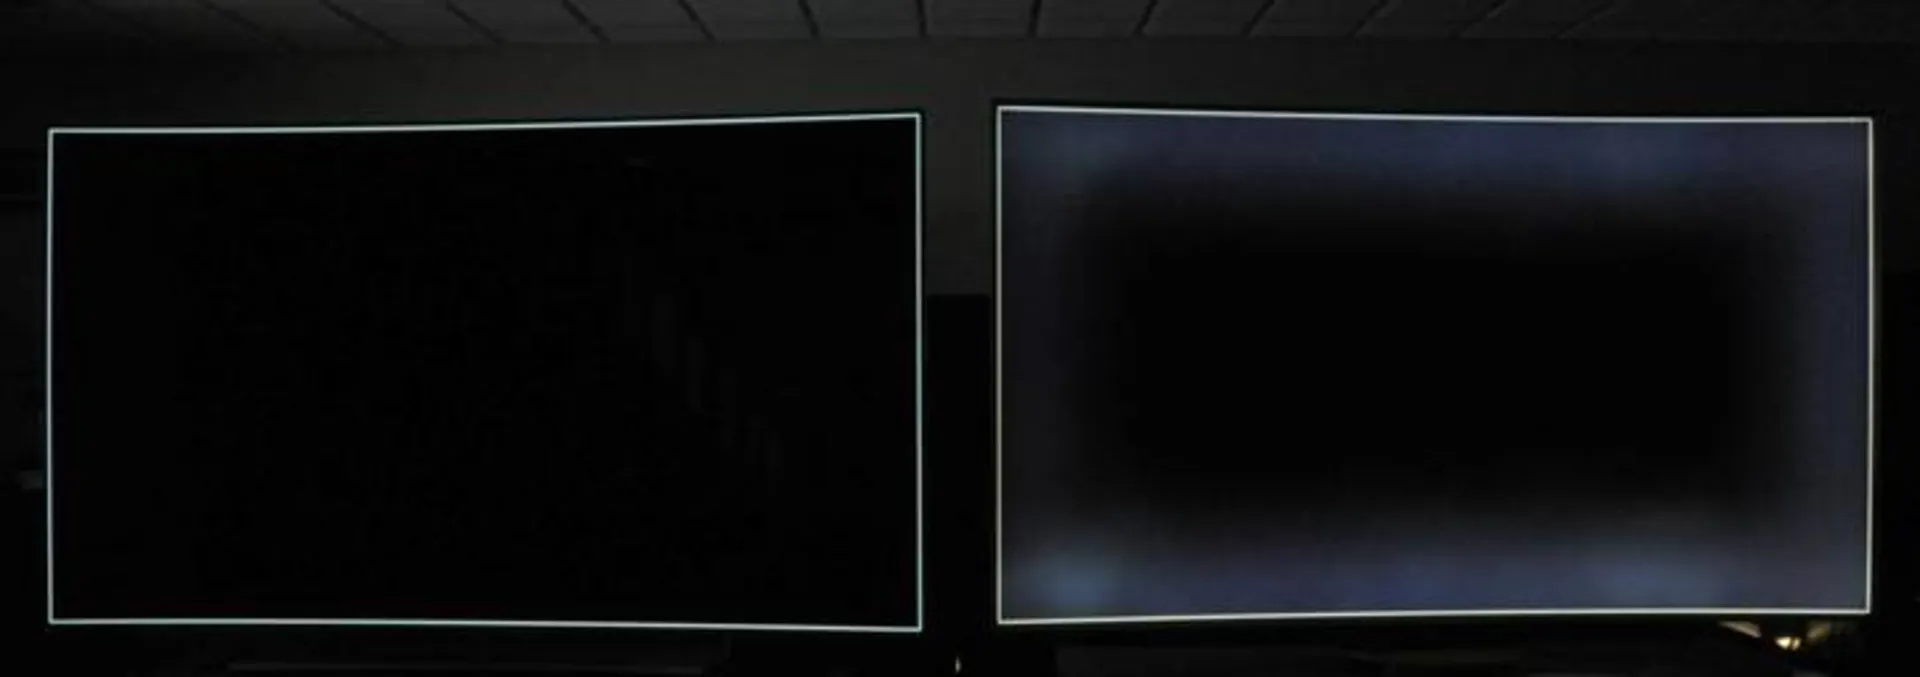 کنتراست تلویزیون oled در مقابل LCD